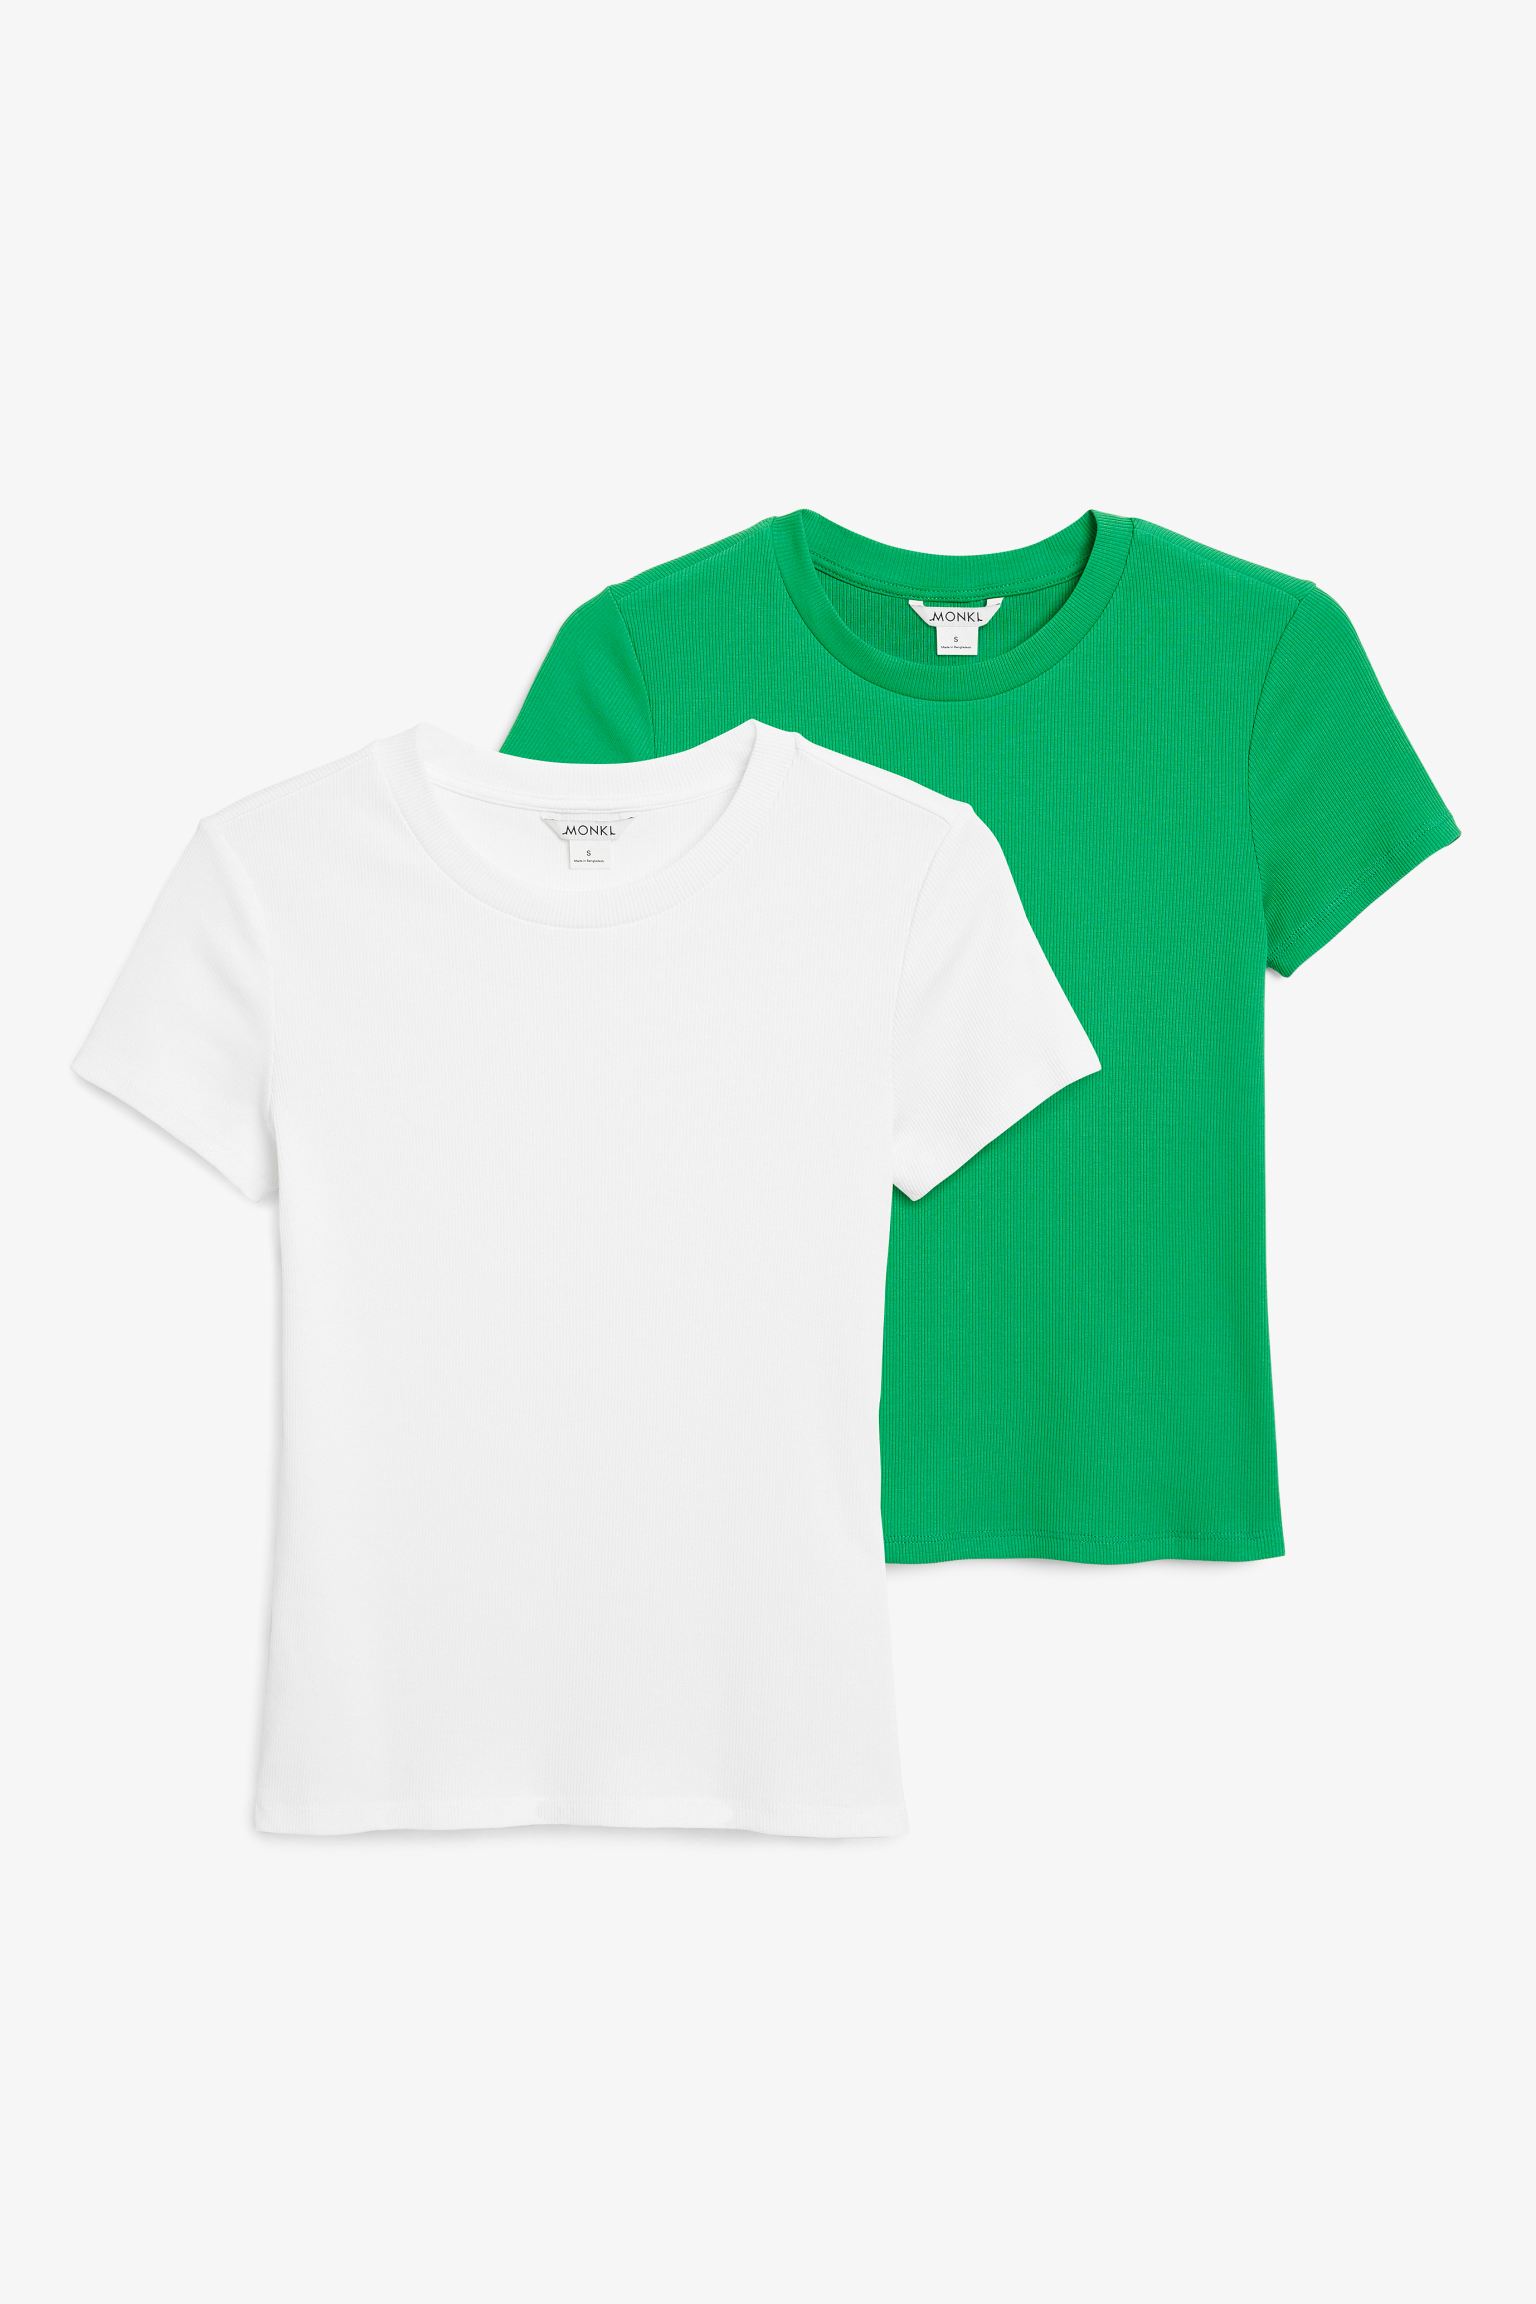 Комплект футболок женских Monki 1174161002 белых S (доставка из-за рубежа)